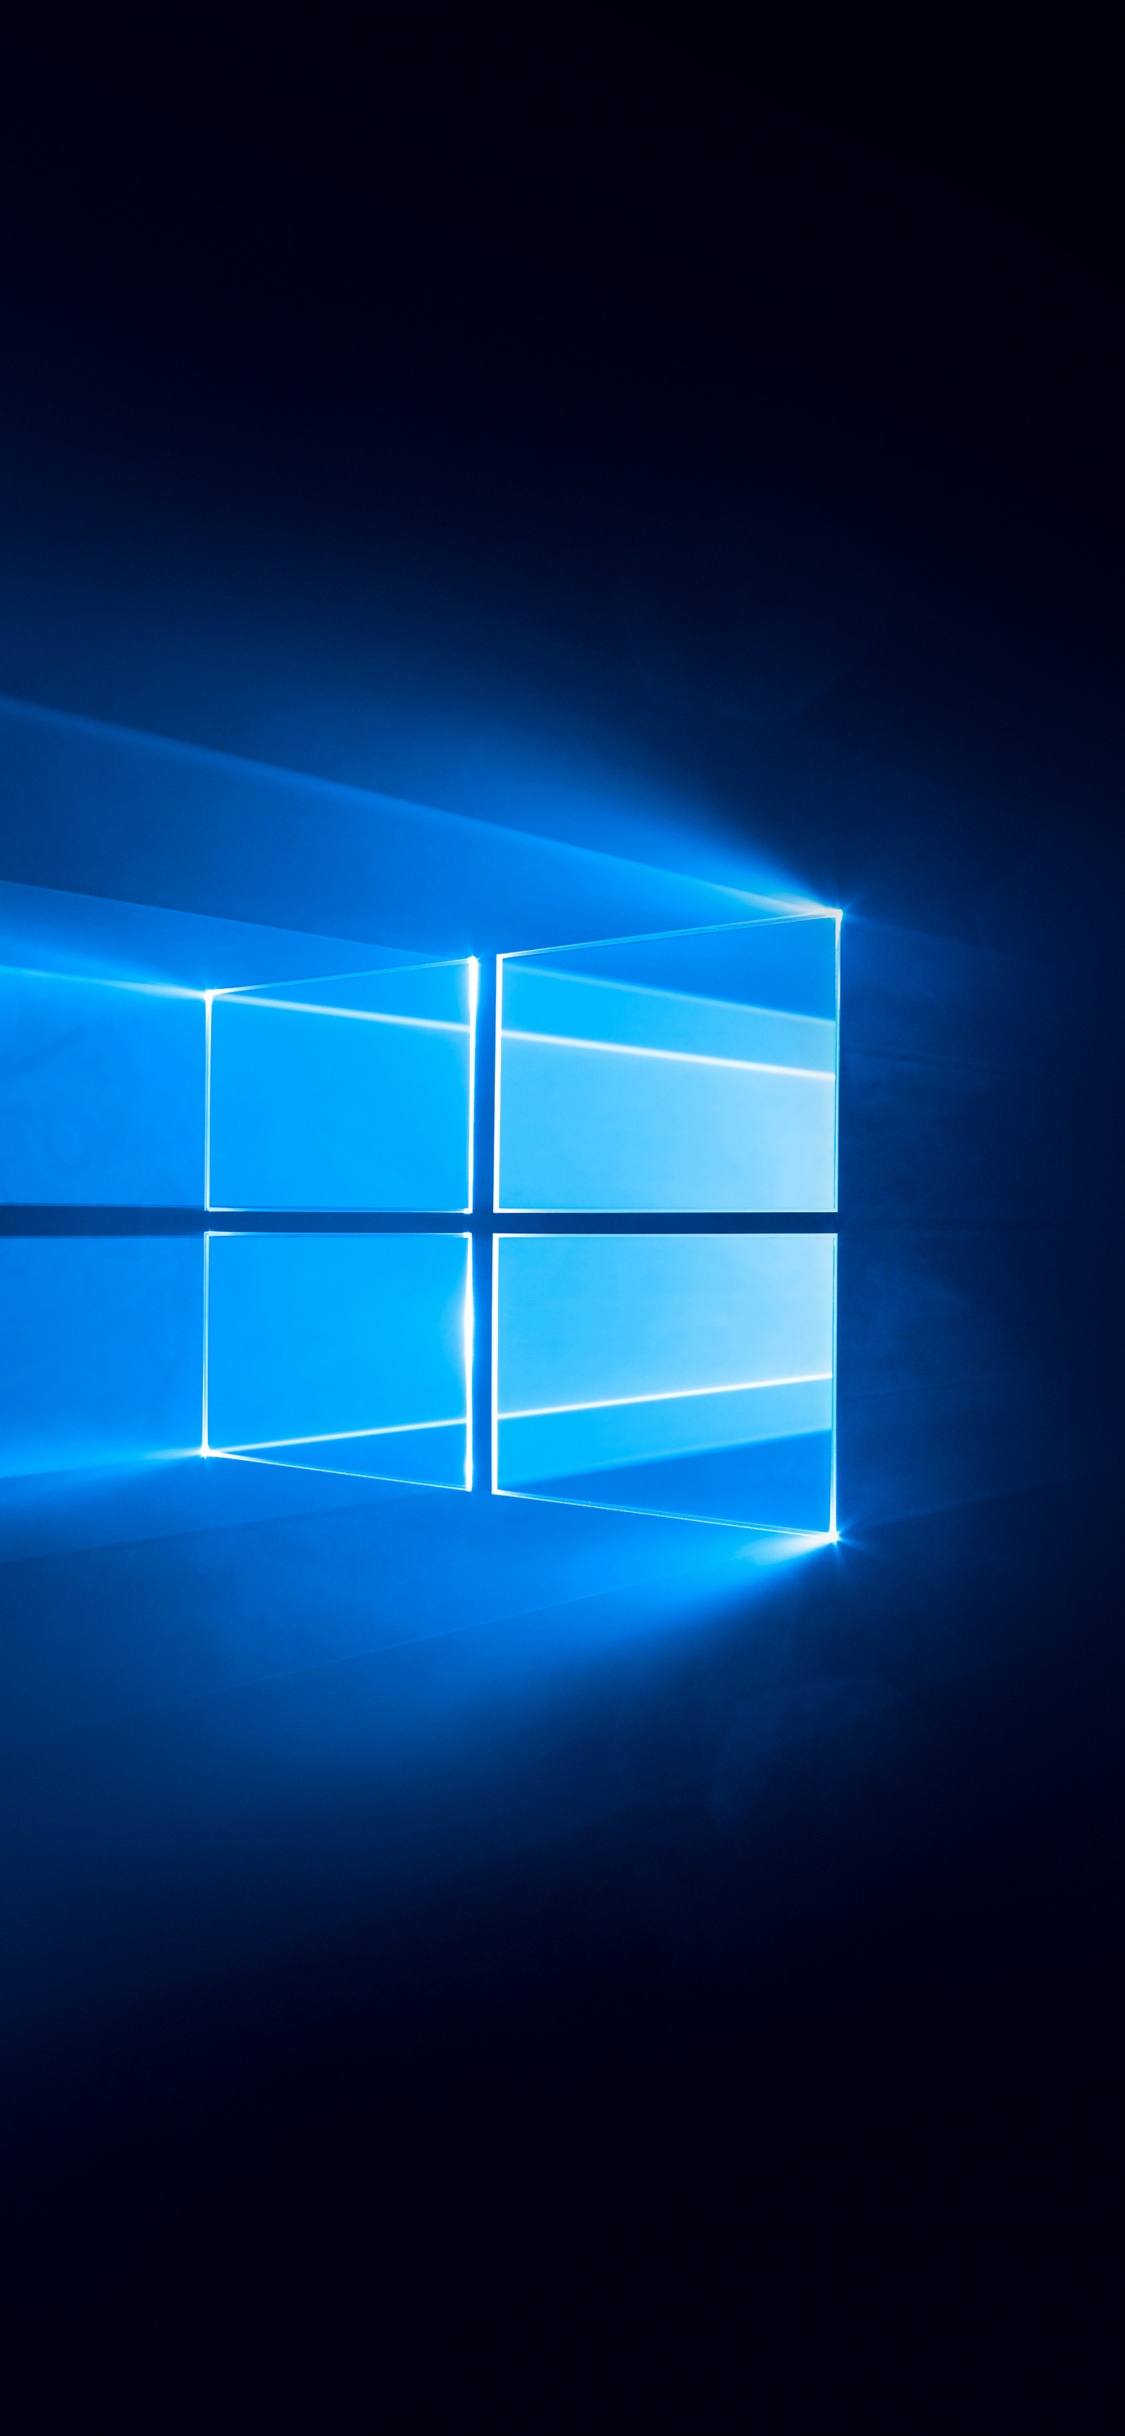 Bạn yêu thích sự đơn giản và tối giản? Hãy khám phá ngay bộ sưu tập những hình nền Windows 10 màu đen của chúng tôi. Những hình ảnh tuyệt đẹp này với màu đen sang trọng và trang nhã sẽ mang đến cho bạn sự thanh lịch và mạnh mẽ cho màn hình máy tính của bạn.